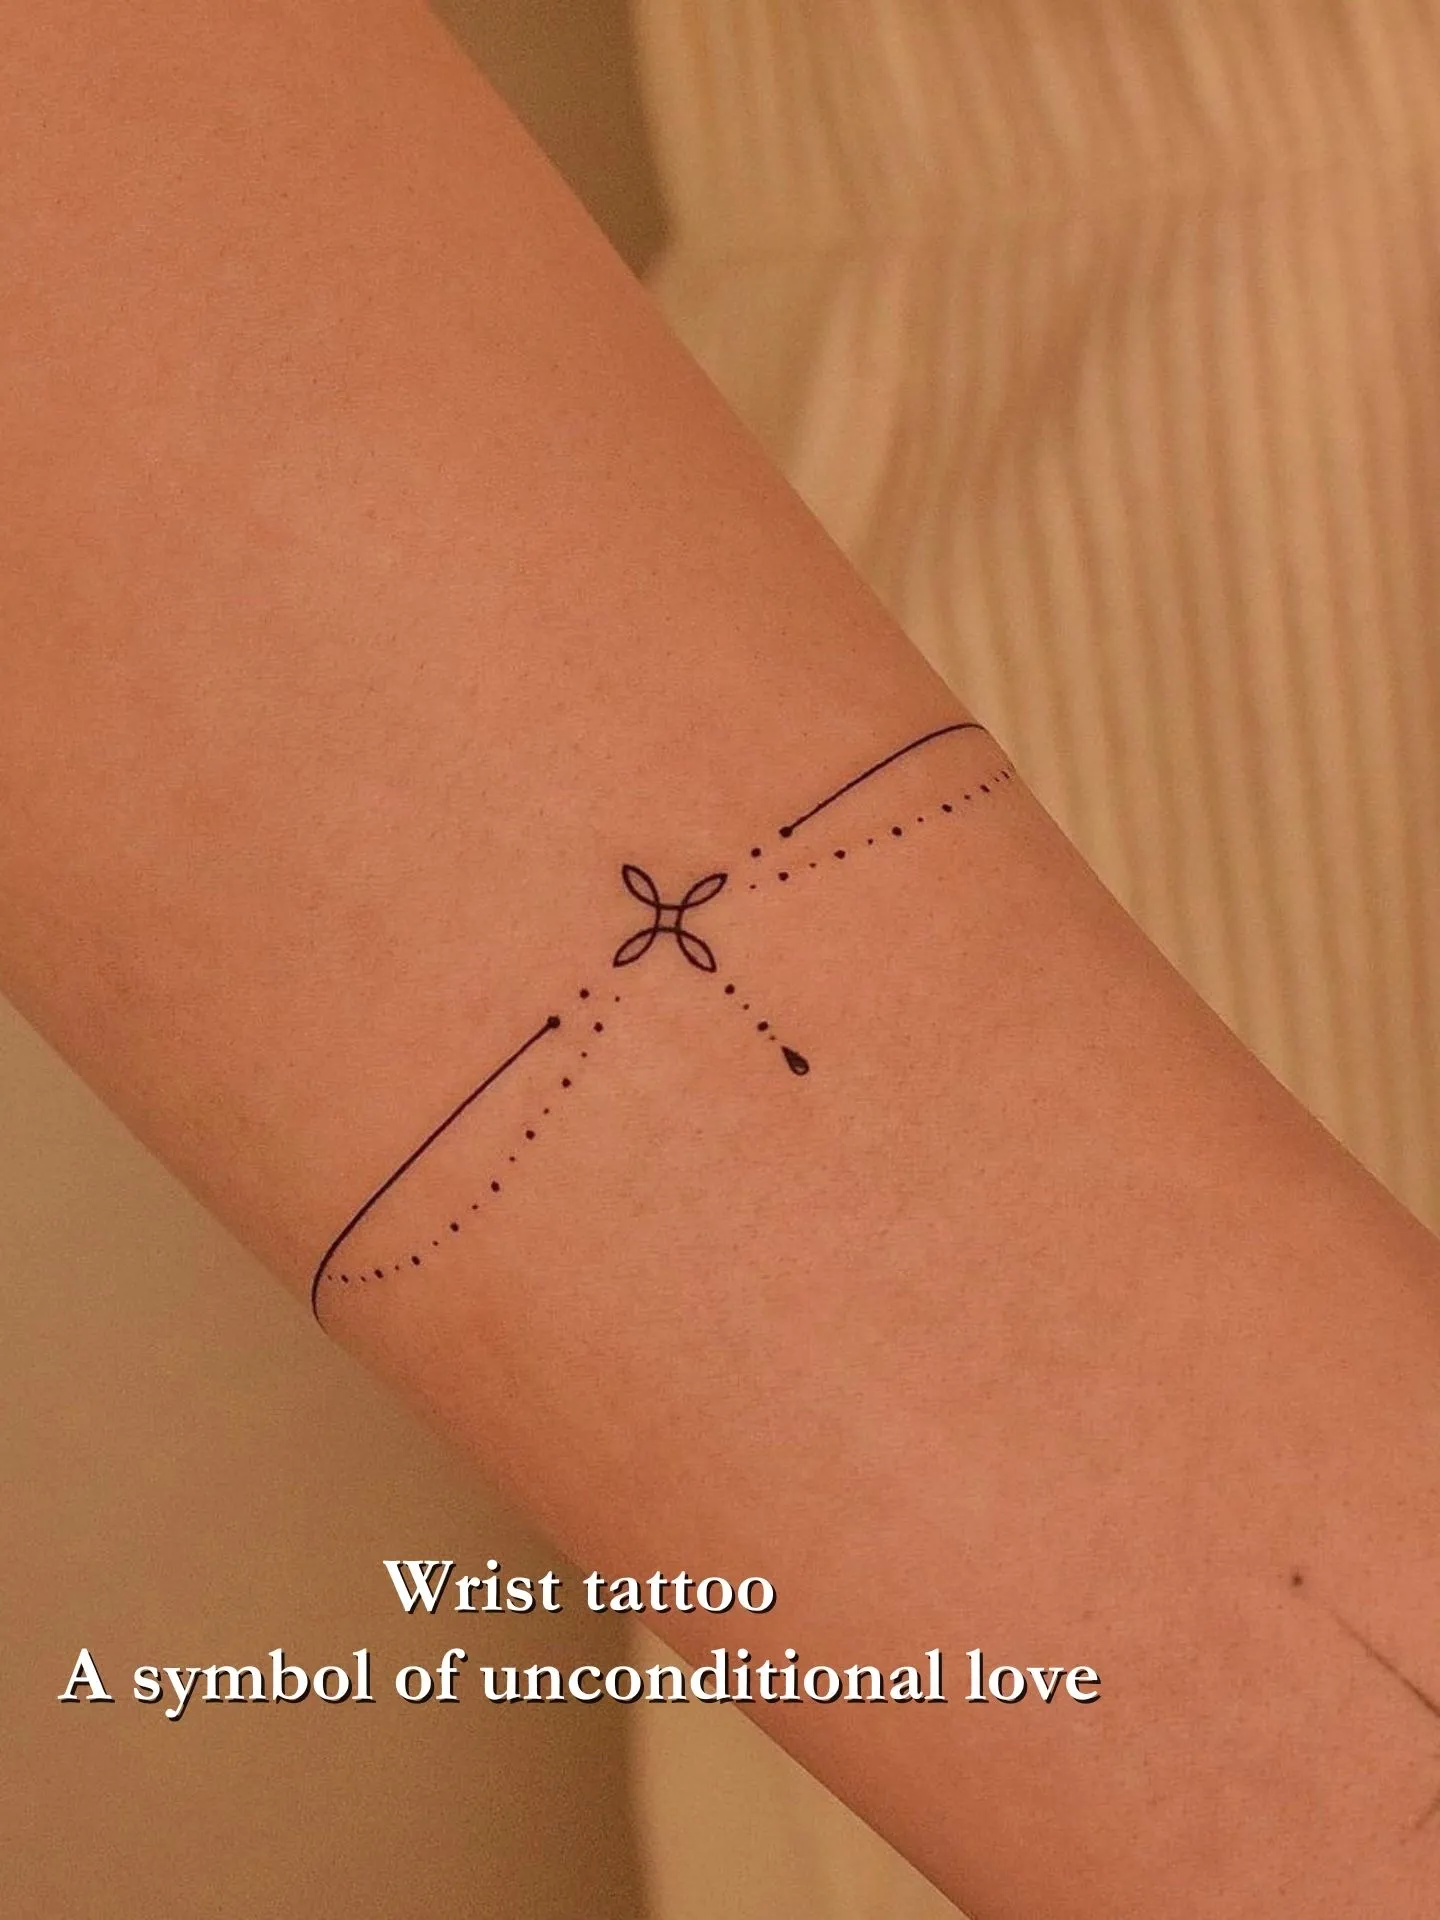 Everything, in time” A perfect first tattoo 🫶🏼 #scripttattoo #ribtattoo  #finelinetattoo #tattooartist #daintytattoo #feminine